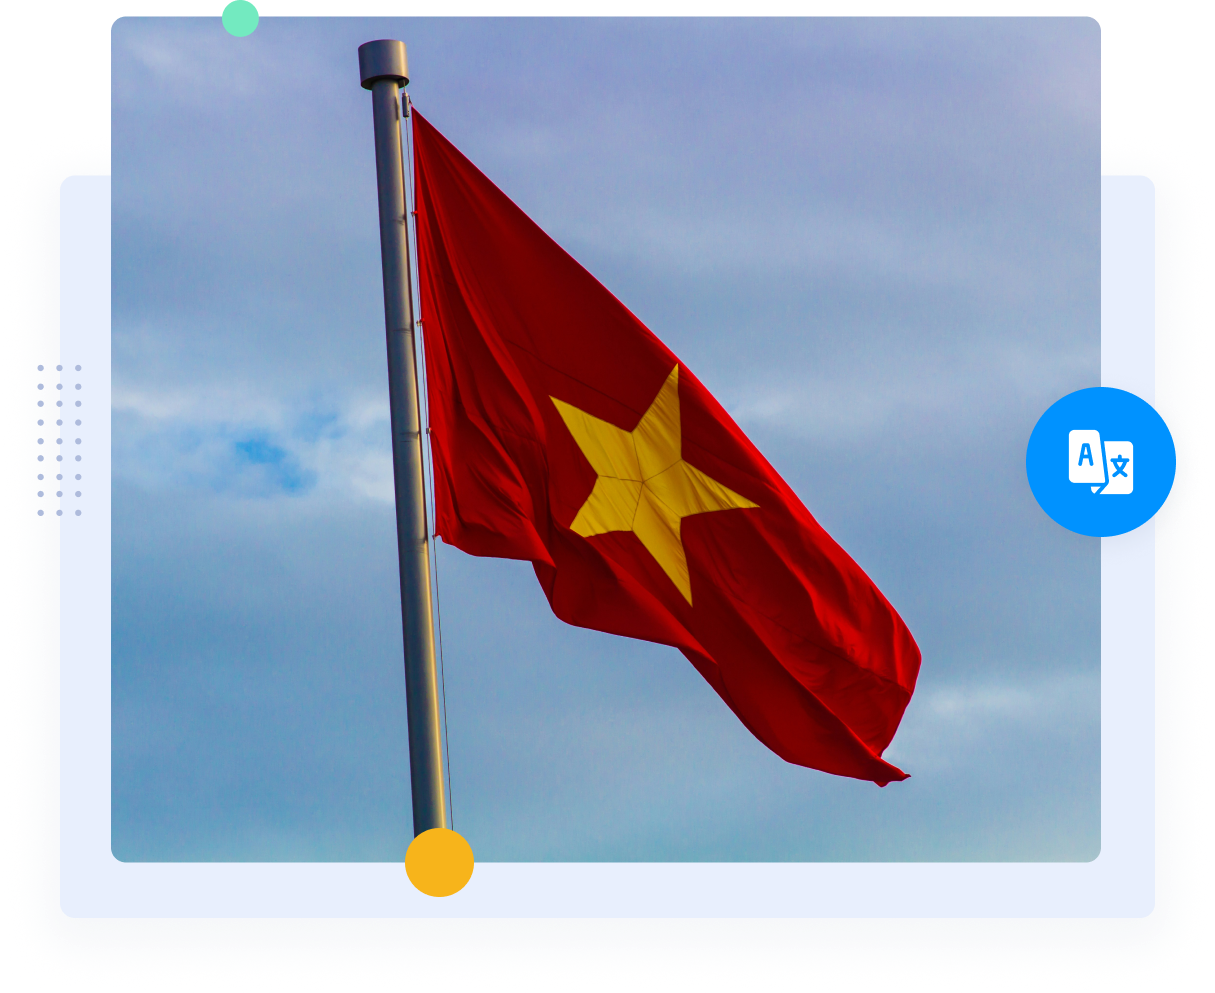 A bandeira vermelha do Vietnã com a estrela amarela representando as traduções do vietnamita para o inglês.